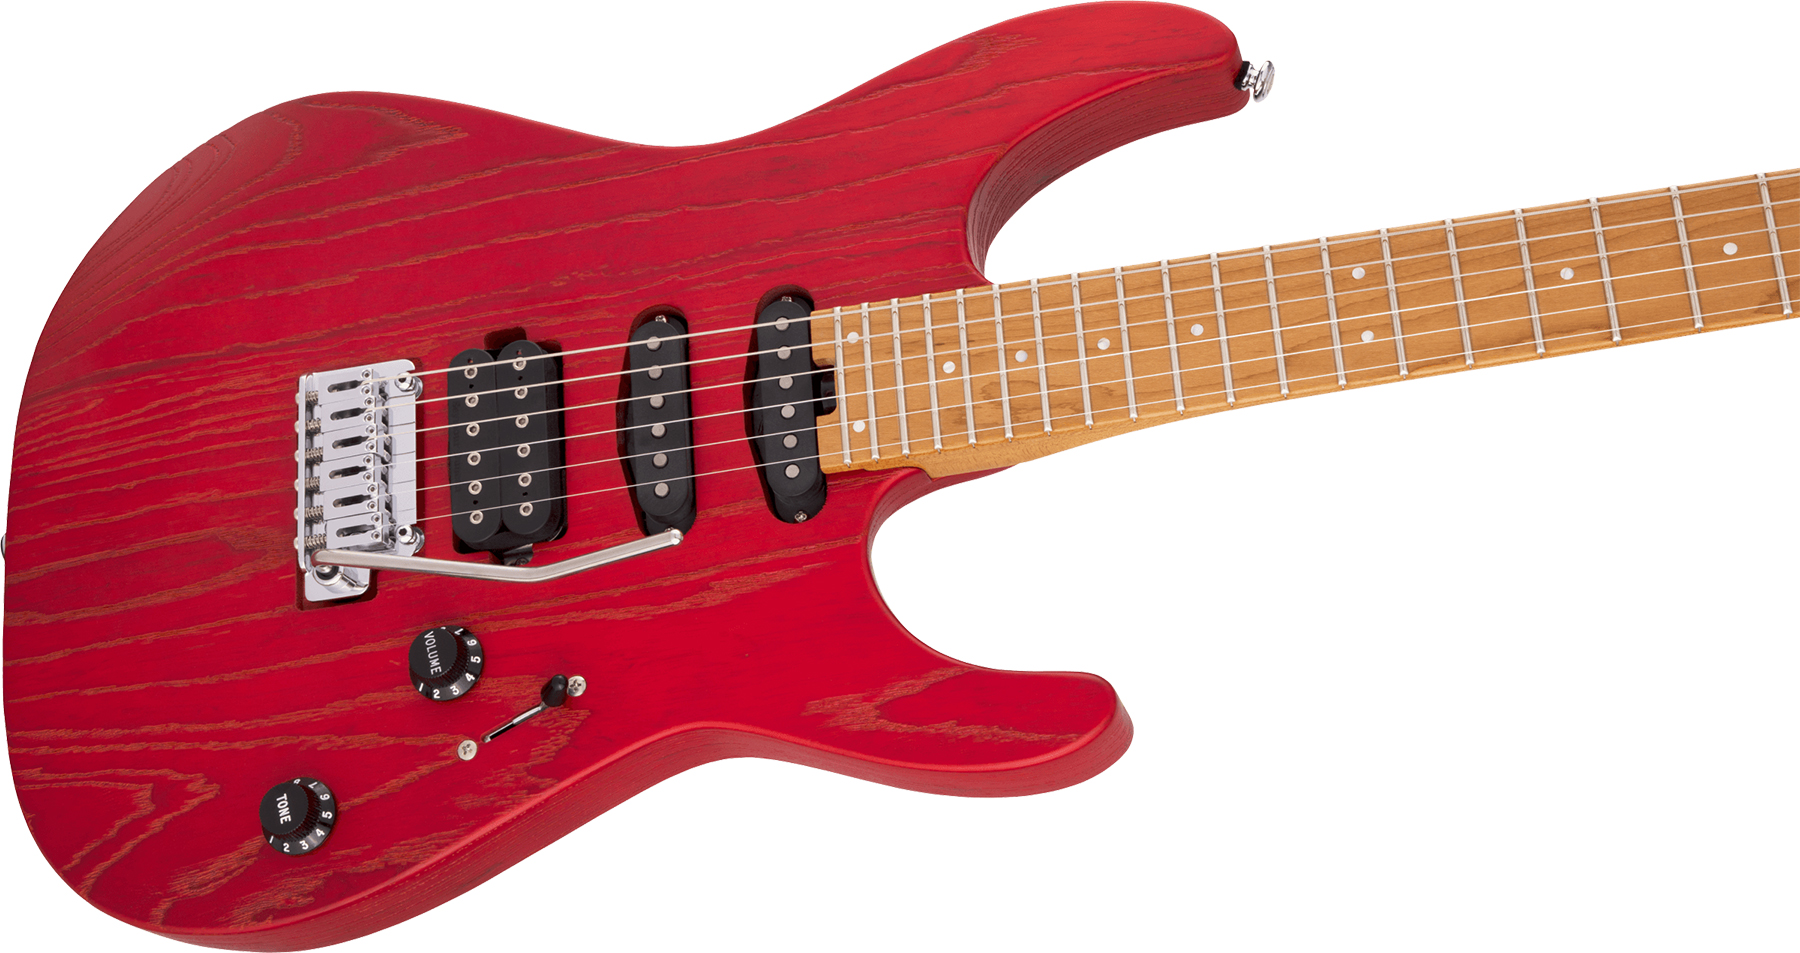 Charvel Dinky Dk24 Hss 2pt Cm Ash Pro-mod Seymour Duncan Trem Mn - Red Ash - E-Gitarre in Str-Form - Variation 2